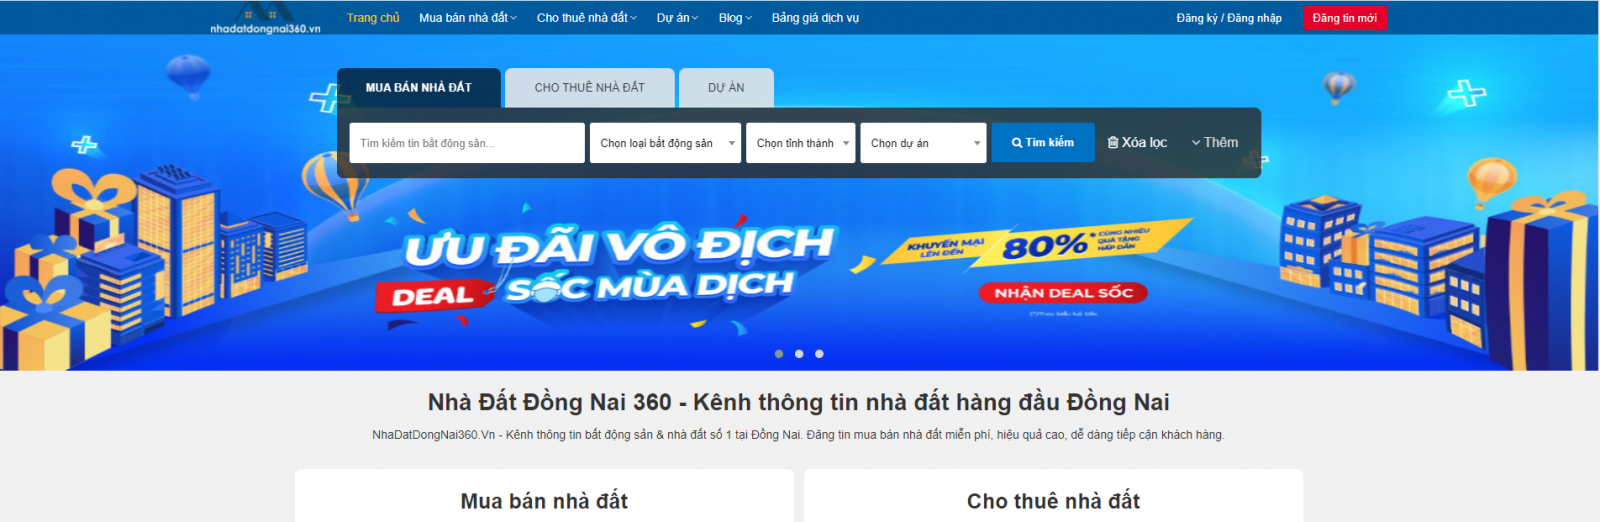 Trang web https://nhadatdongnai360.vn/ - là sàn giao dịch bất động sản sôi động và uy tín ở khu vực Đồng Nai